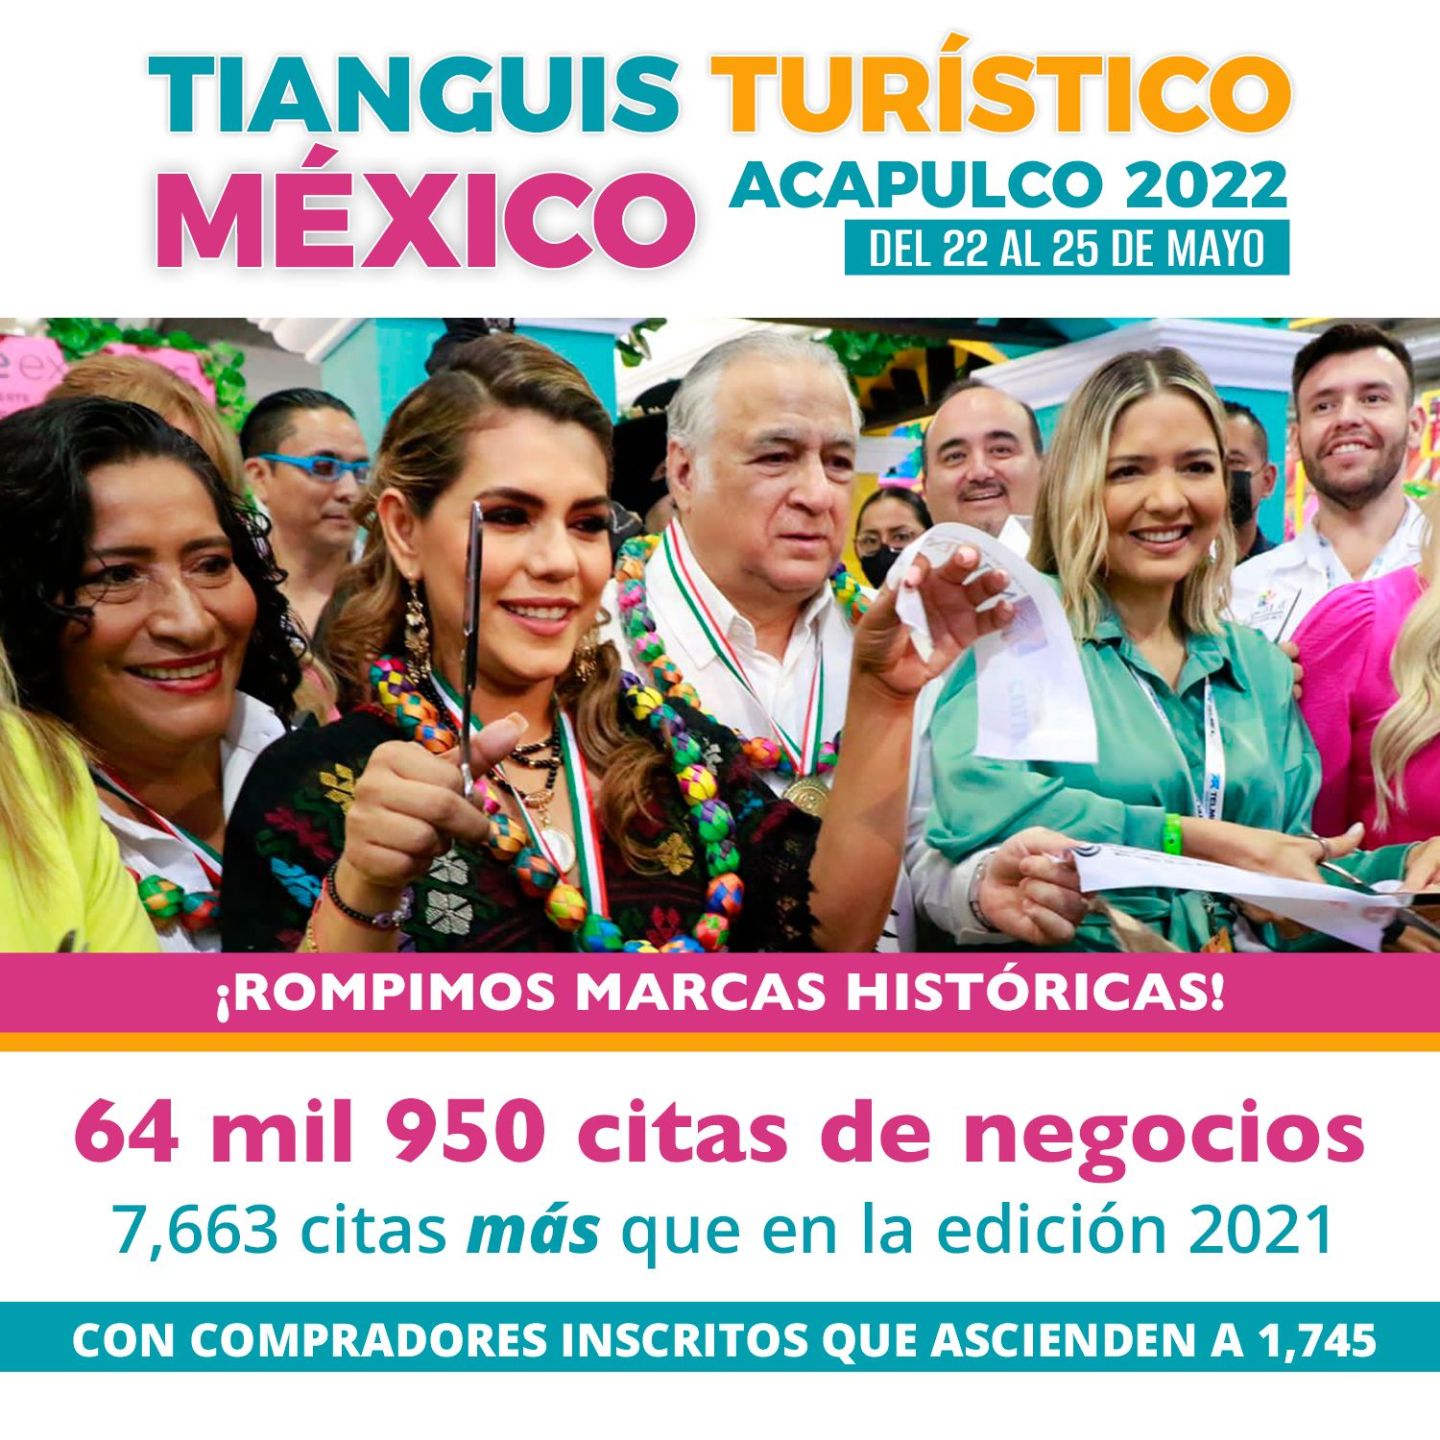 Tianguis Turístico Acapulco 2022 rompe récords históricos en citas de negocios y transacciones 